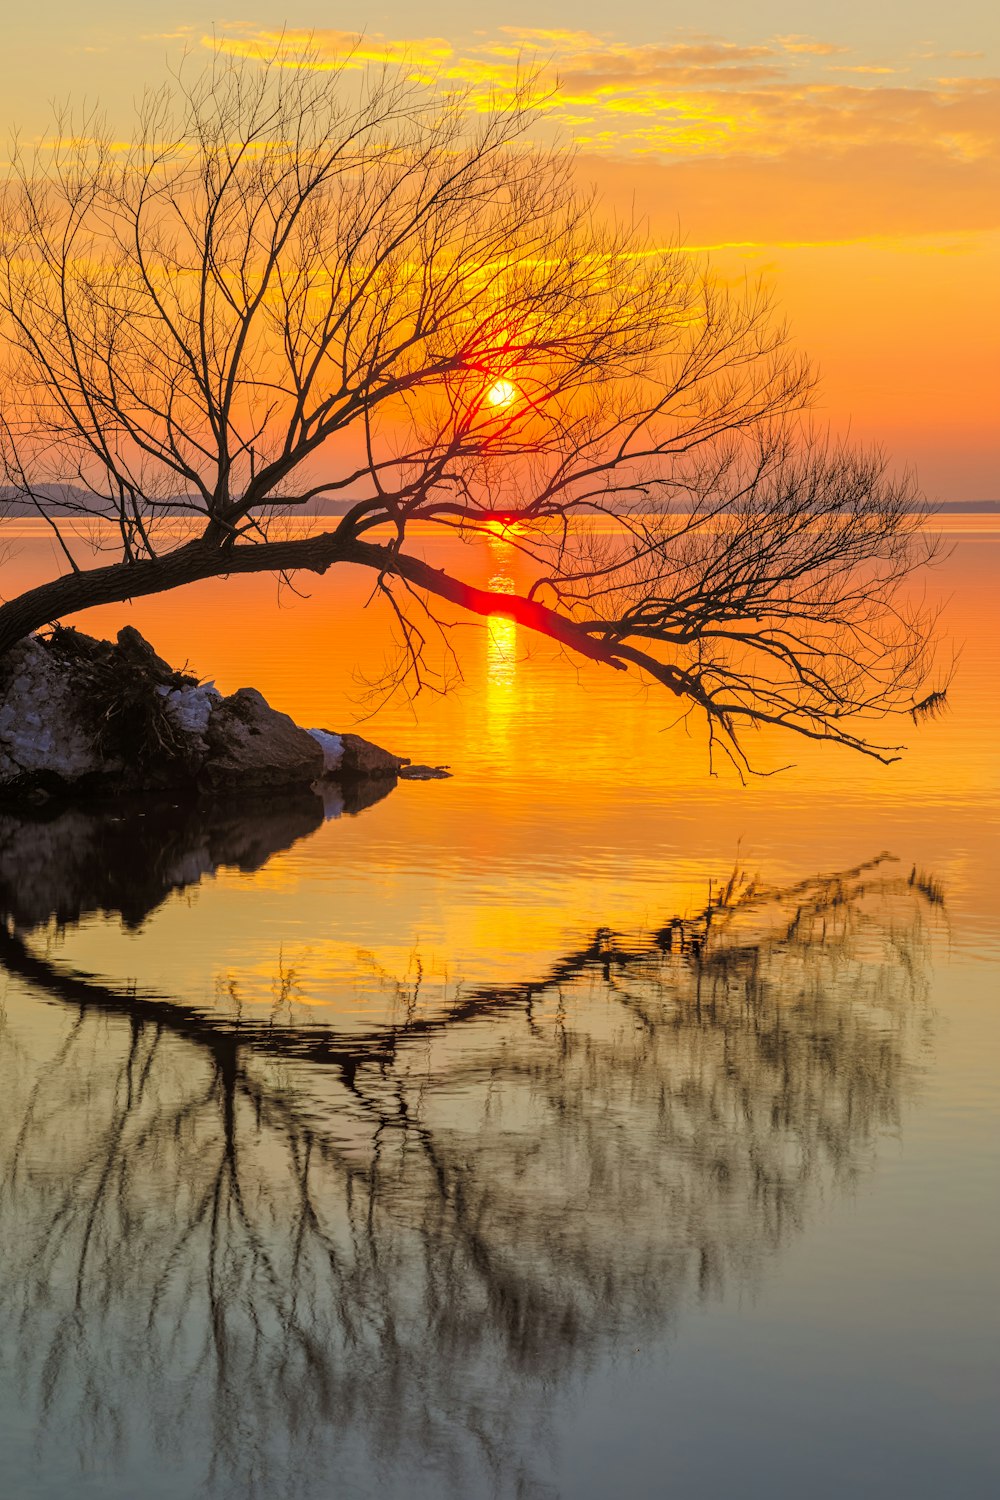 albero senza foglie sull'acqua durante il tramonto